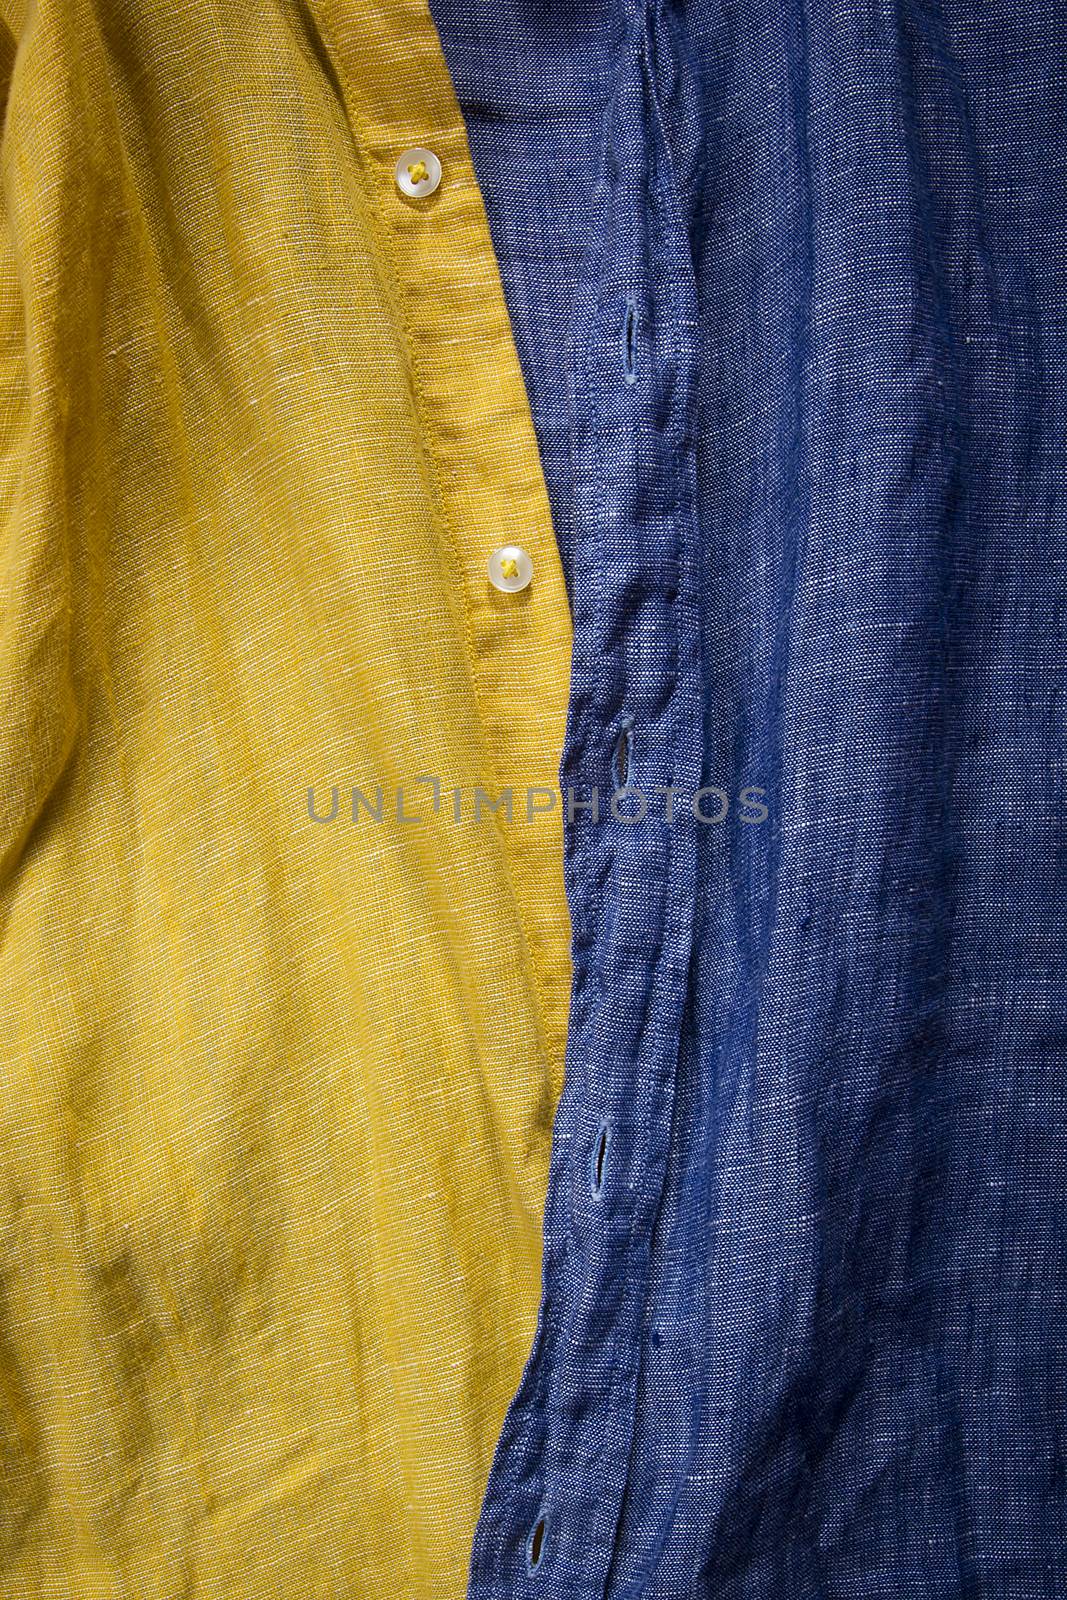 Cotton shirt close-up by VIPDesignUSA